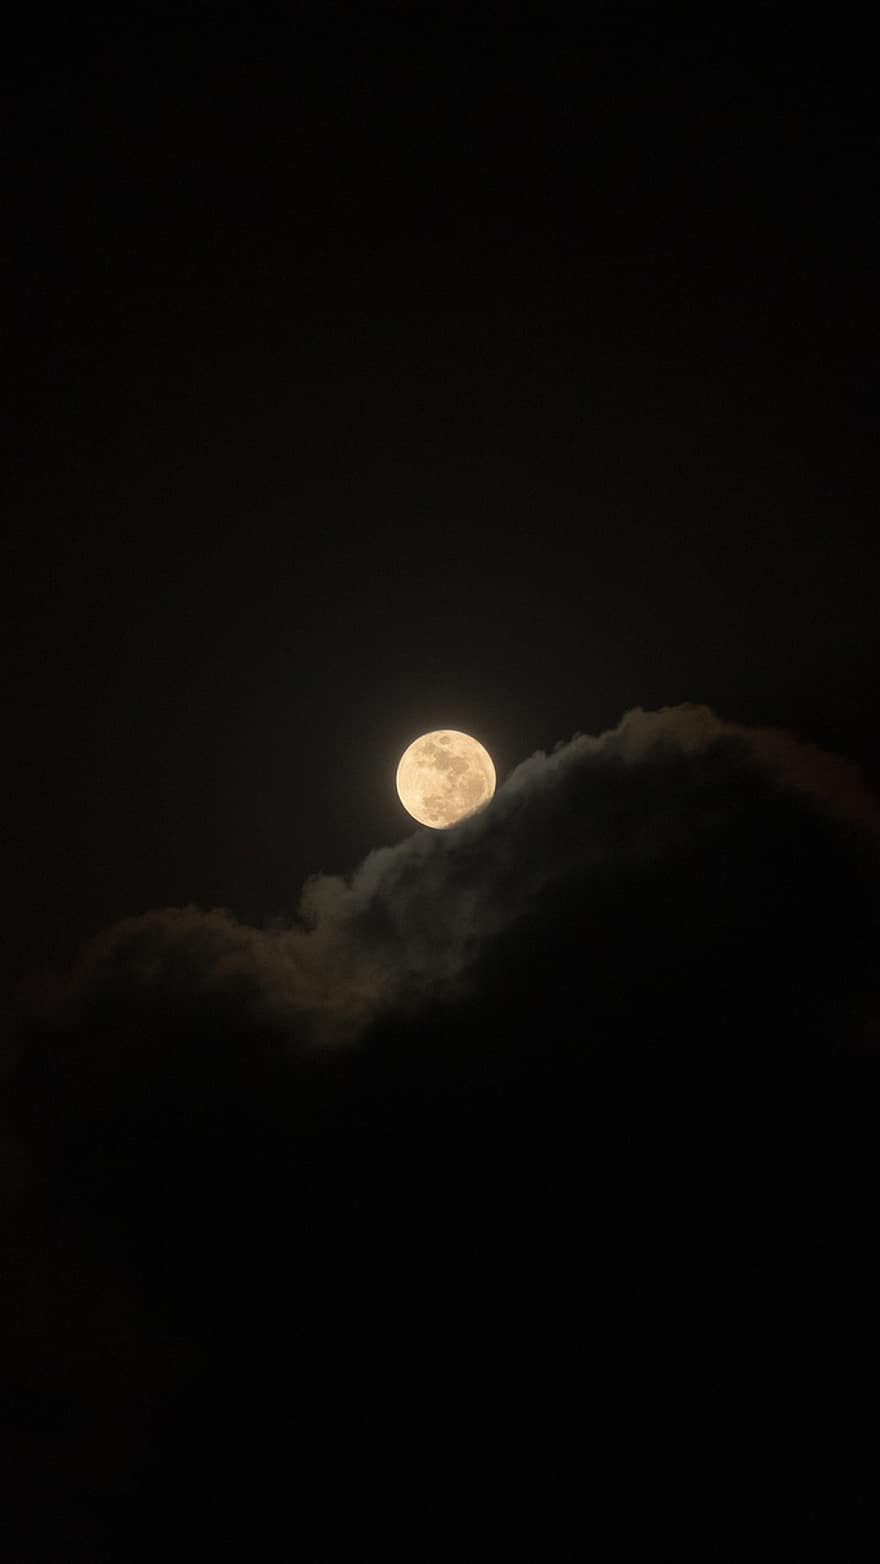 चांद, आकाश, पूर्णचंद्र, रात, चांदनी, चांद्र, अंधकारमय आकाश, लूना, कपोल कल्पित, खगोल, अंधेरा